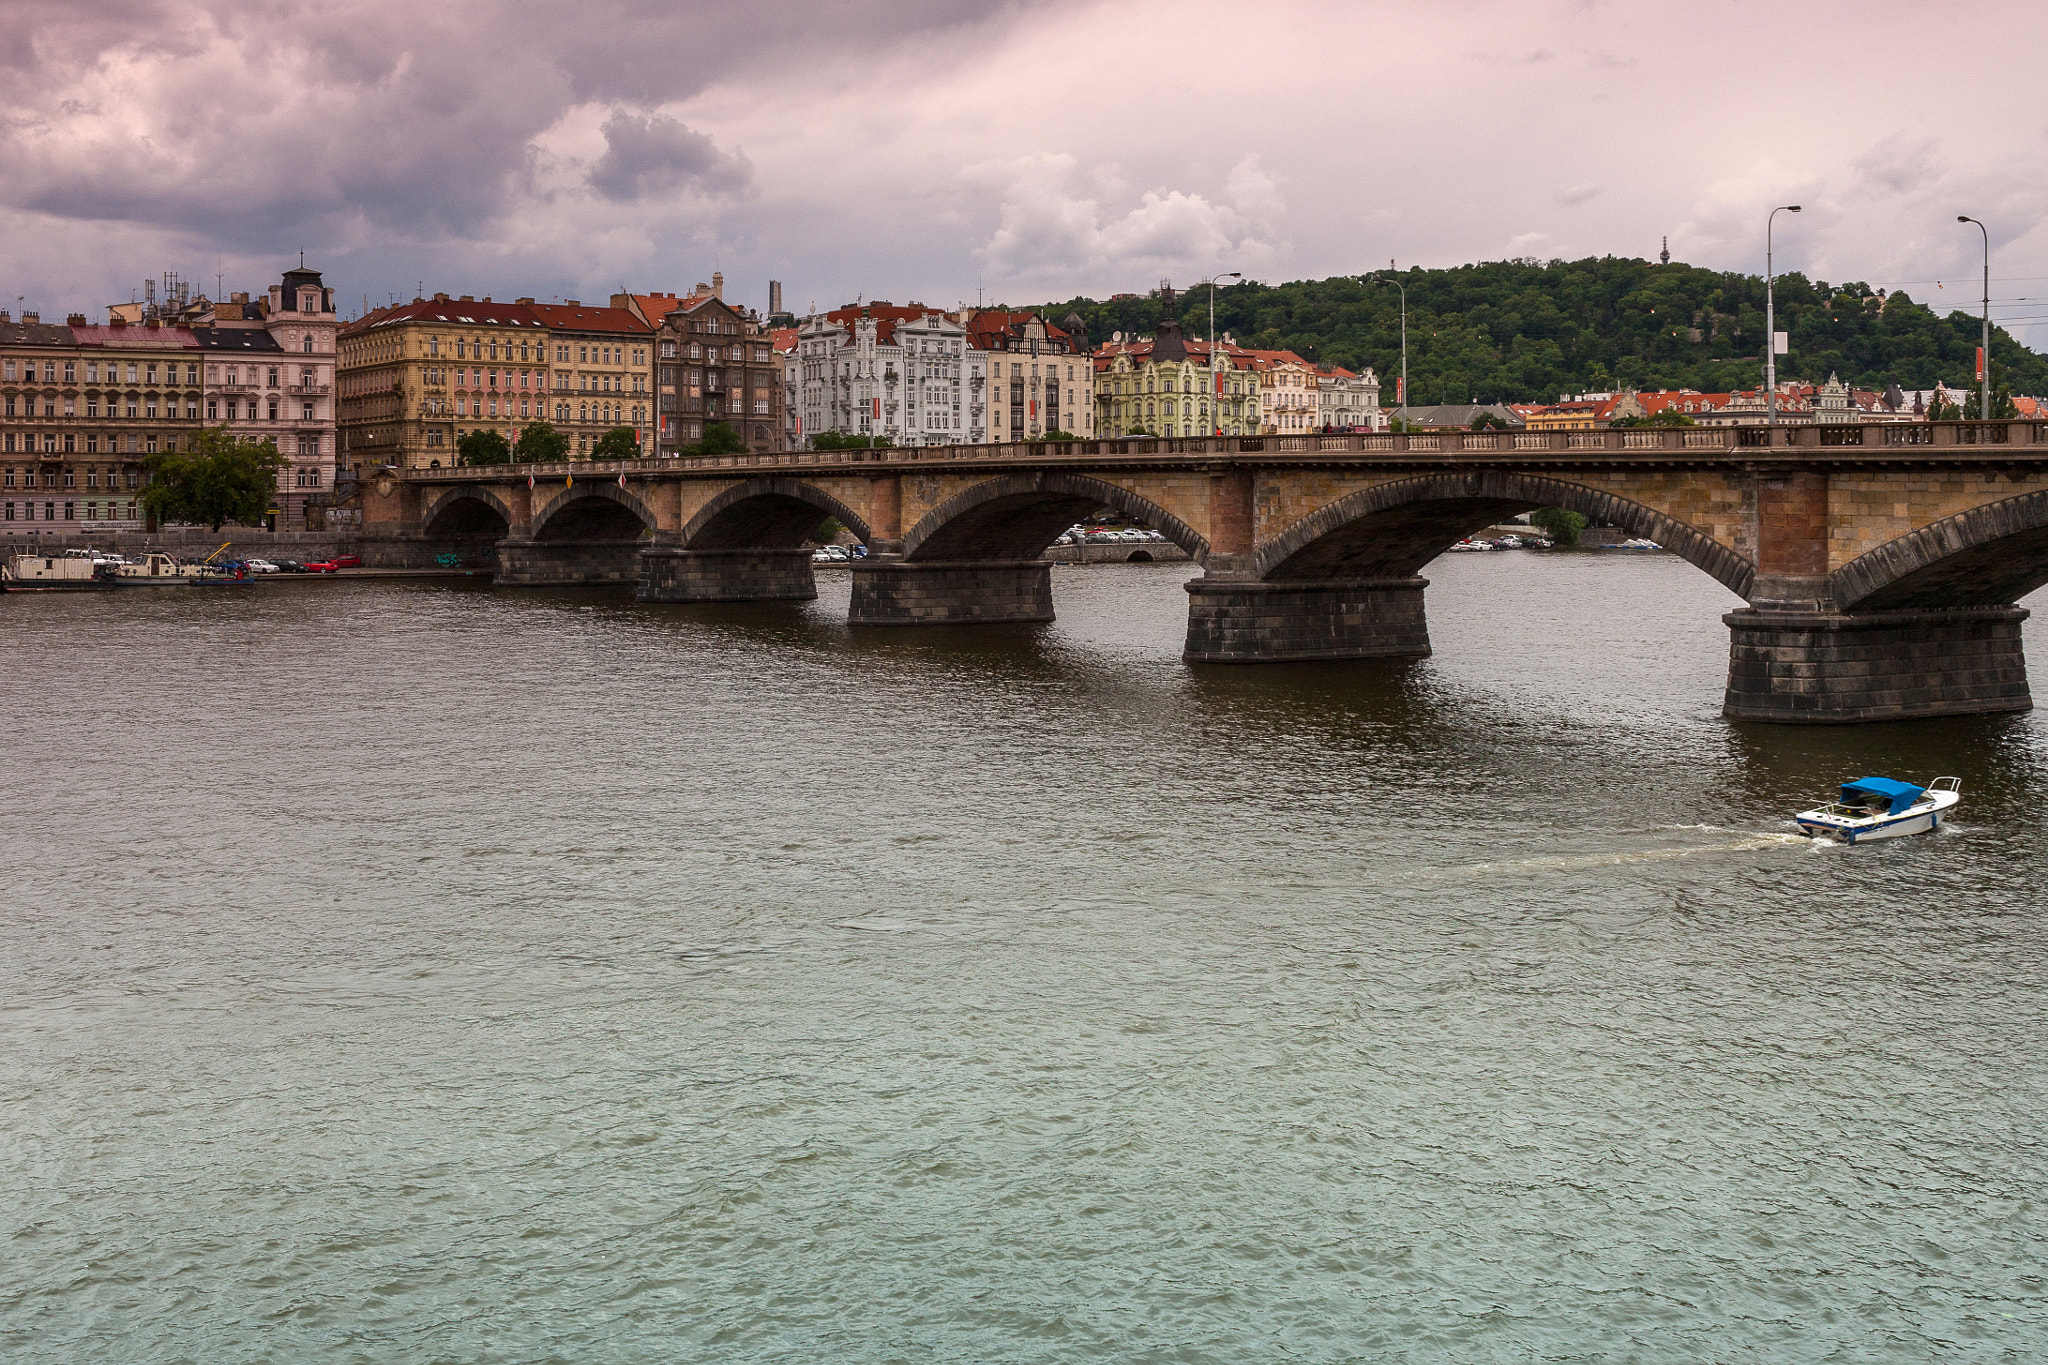 ZEISS Distagon T* 35mm F2 sample photo. Prague bridges photography